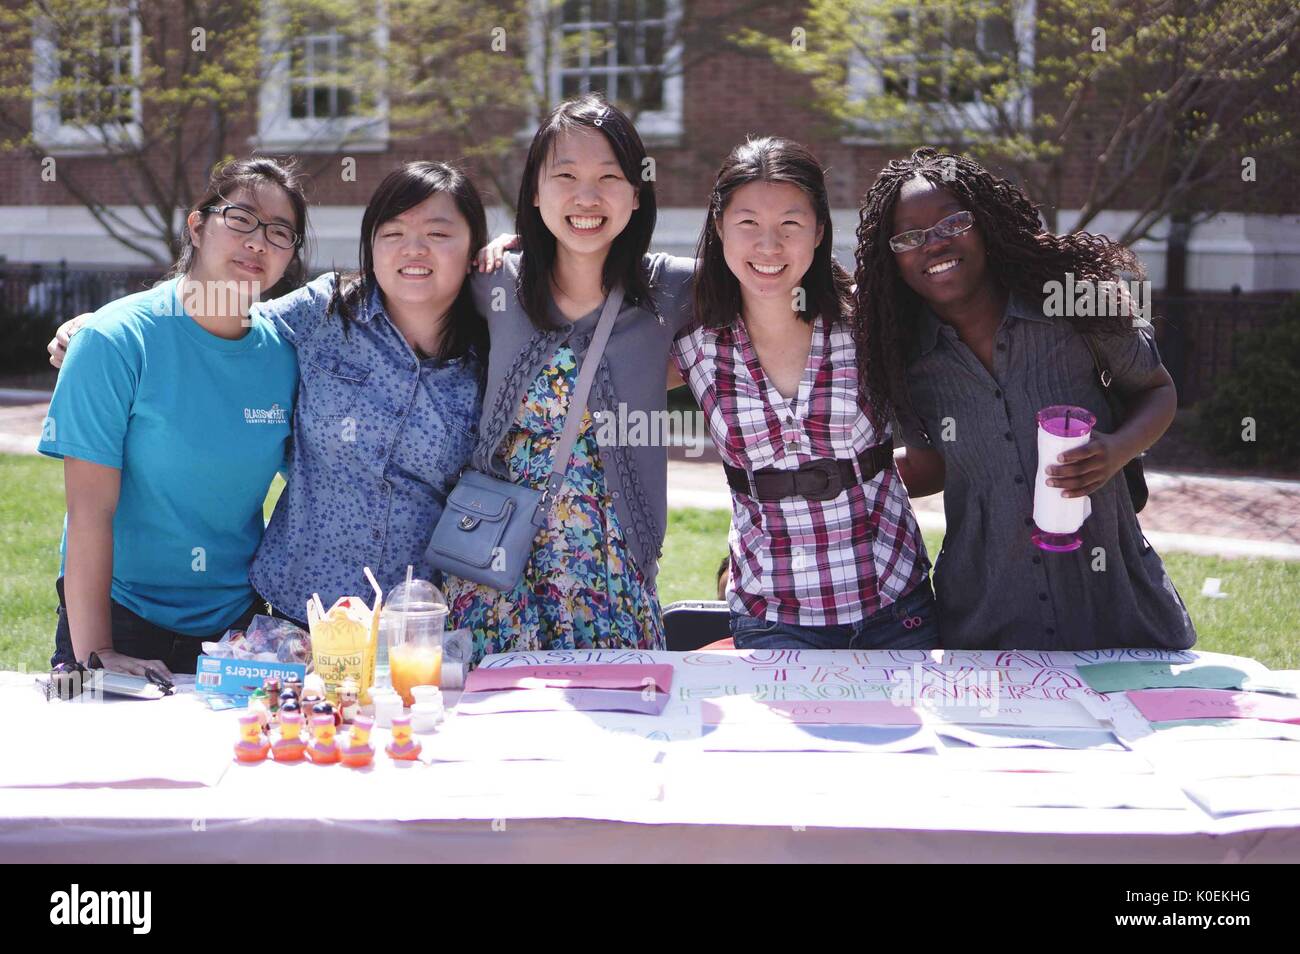 Cinque studenti sorridenti posano per fotografare insieme con le braccia, presiando un tavolo sulle curiosità asiatiche durante la Fiera di primavera, un carnevale di primavera gestito da studenti alla Johns Hopkins University, Baltimora, Maryland, aprile 2014. Cortesia Eric Chen. Foto Stock